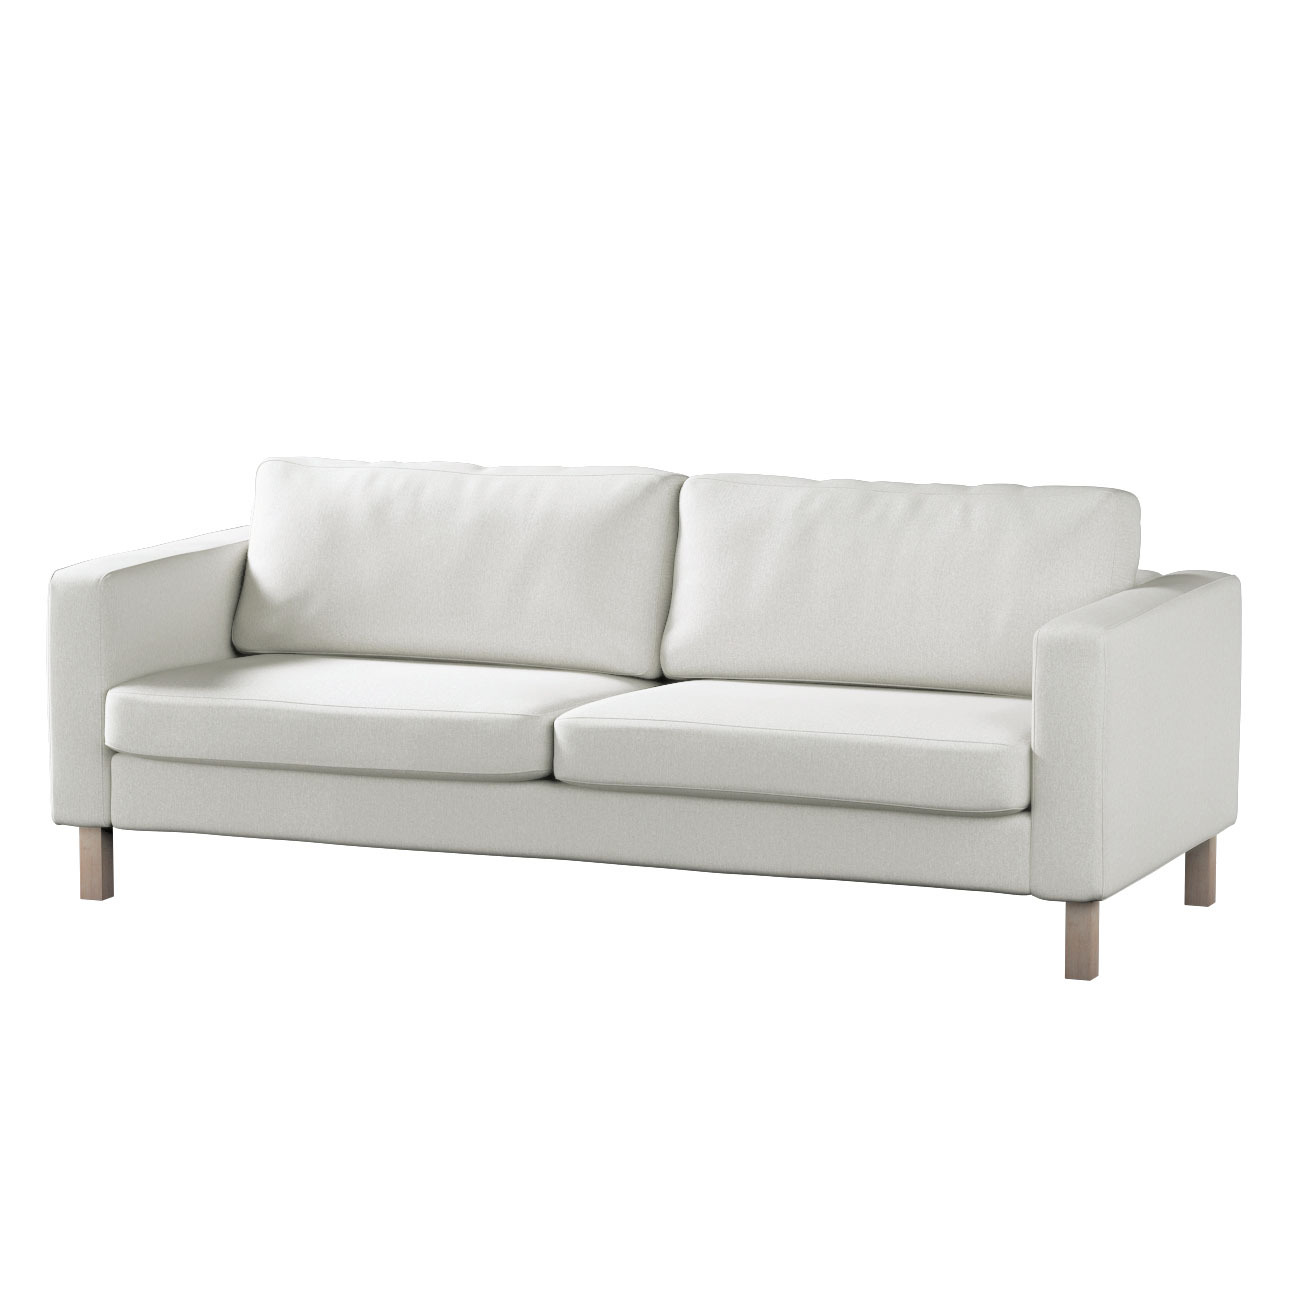 Bezug für Karlstad 3-Sitzer Sofa nicht ausklappbar, kurz, creme, Bezug für günstig online kaufen